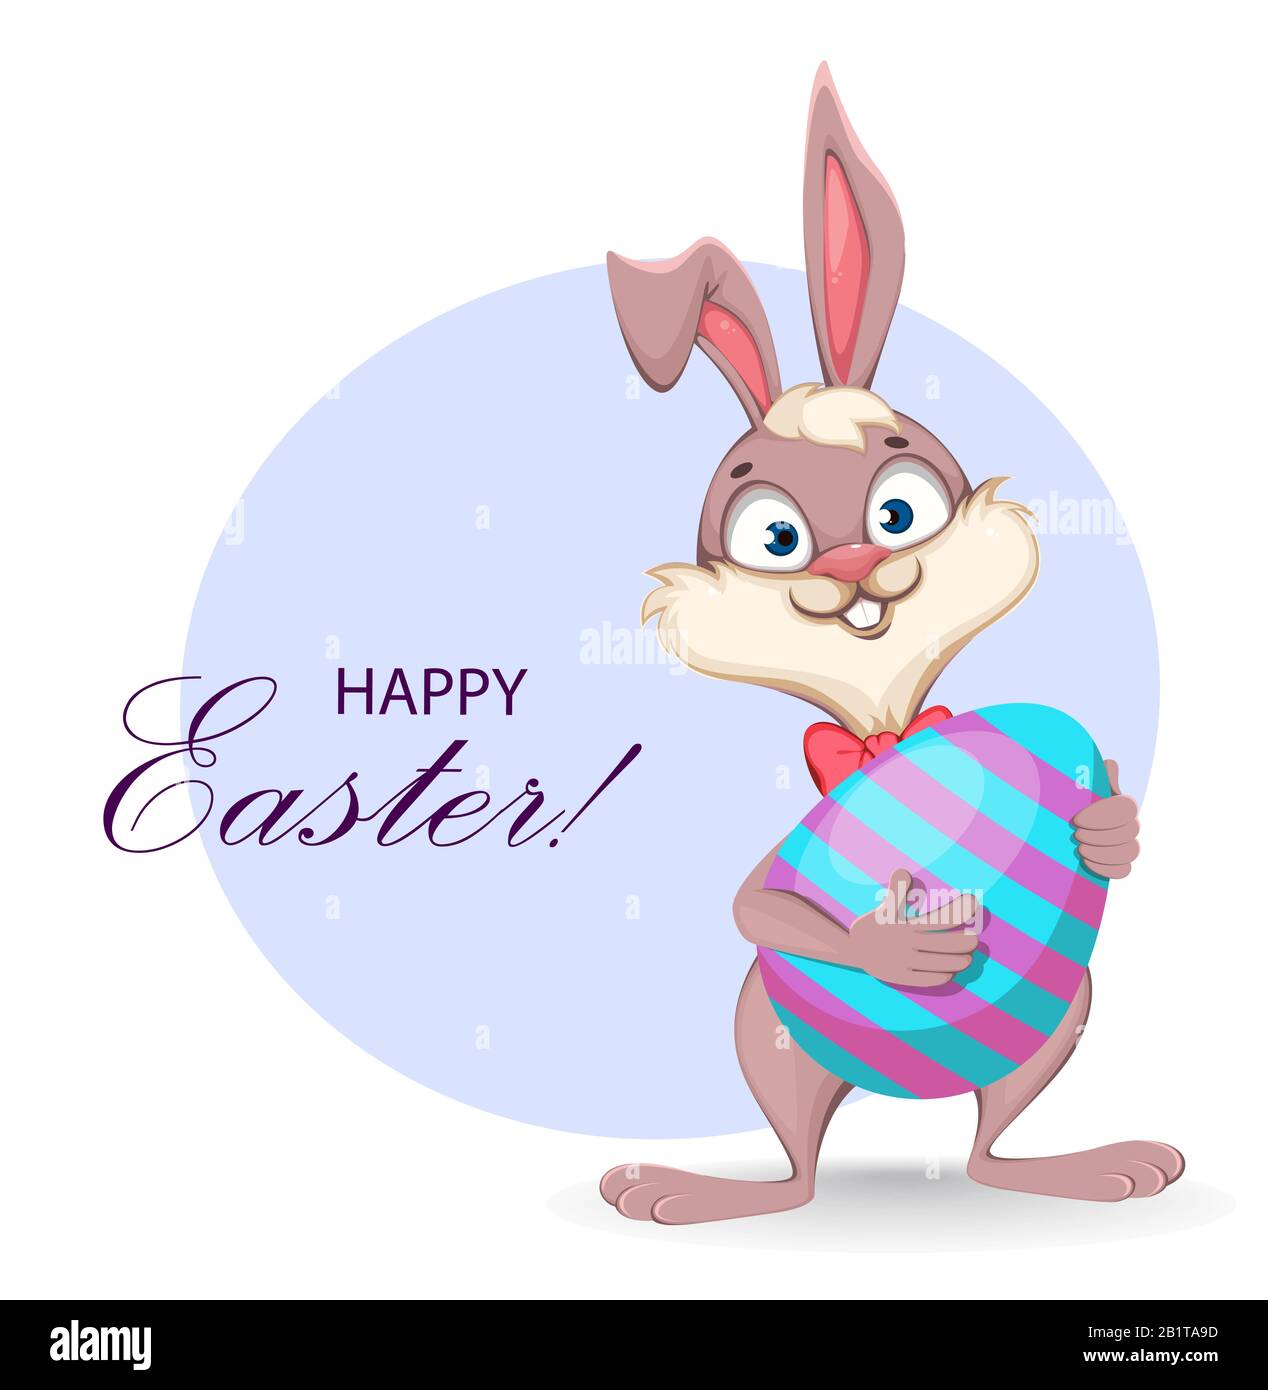 Frohe Ostern Grußkarte. Lustiger Zeichentrickkaninchen hält großes farbiges Ei. Vektor-Darstellung auf weißem Hintergrund Stock Vektor